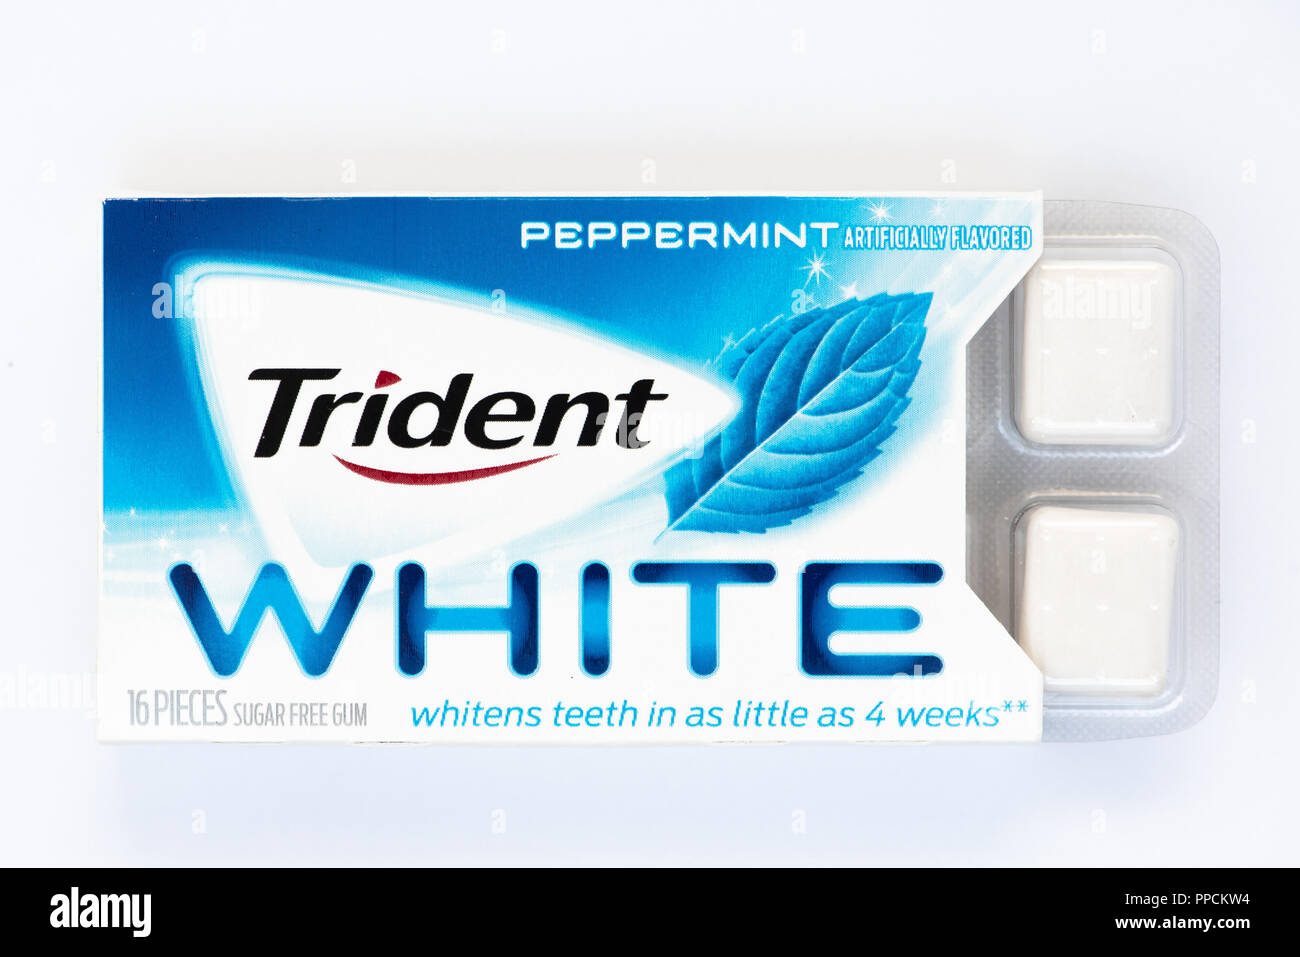 Ein Paket von pfefferminze Trident White zuckerfreie Kaugummis, die behaupten, die Aufhellung der Zähne in nur 4 Wochen. Stockfoto